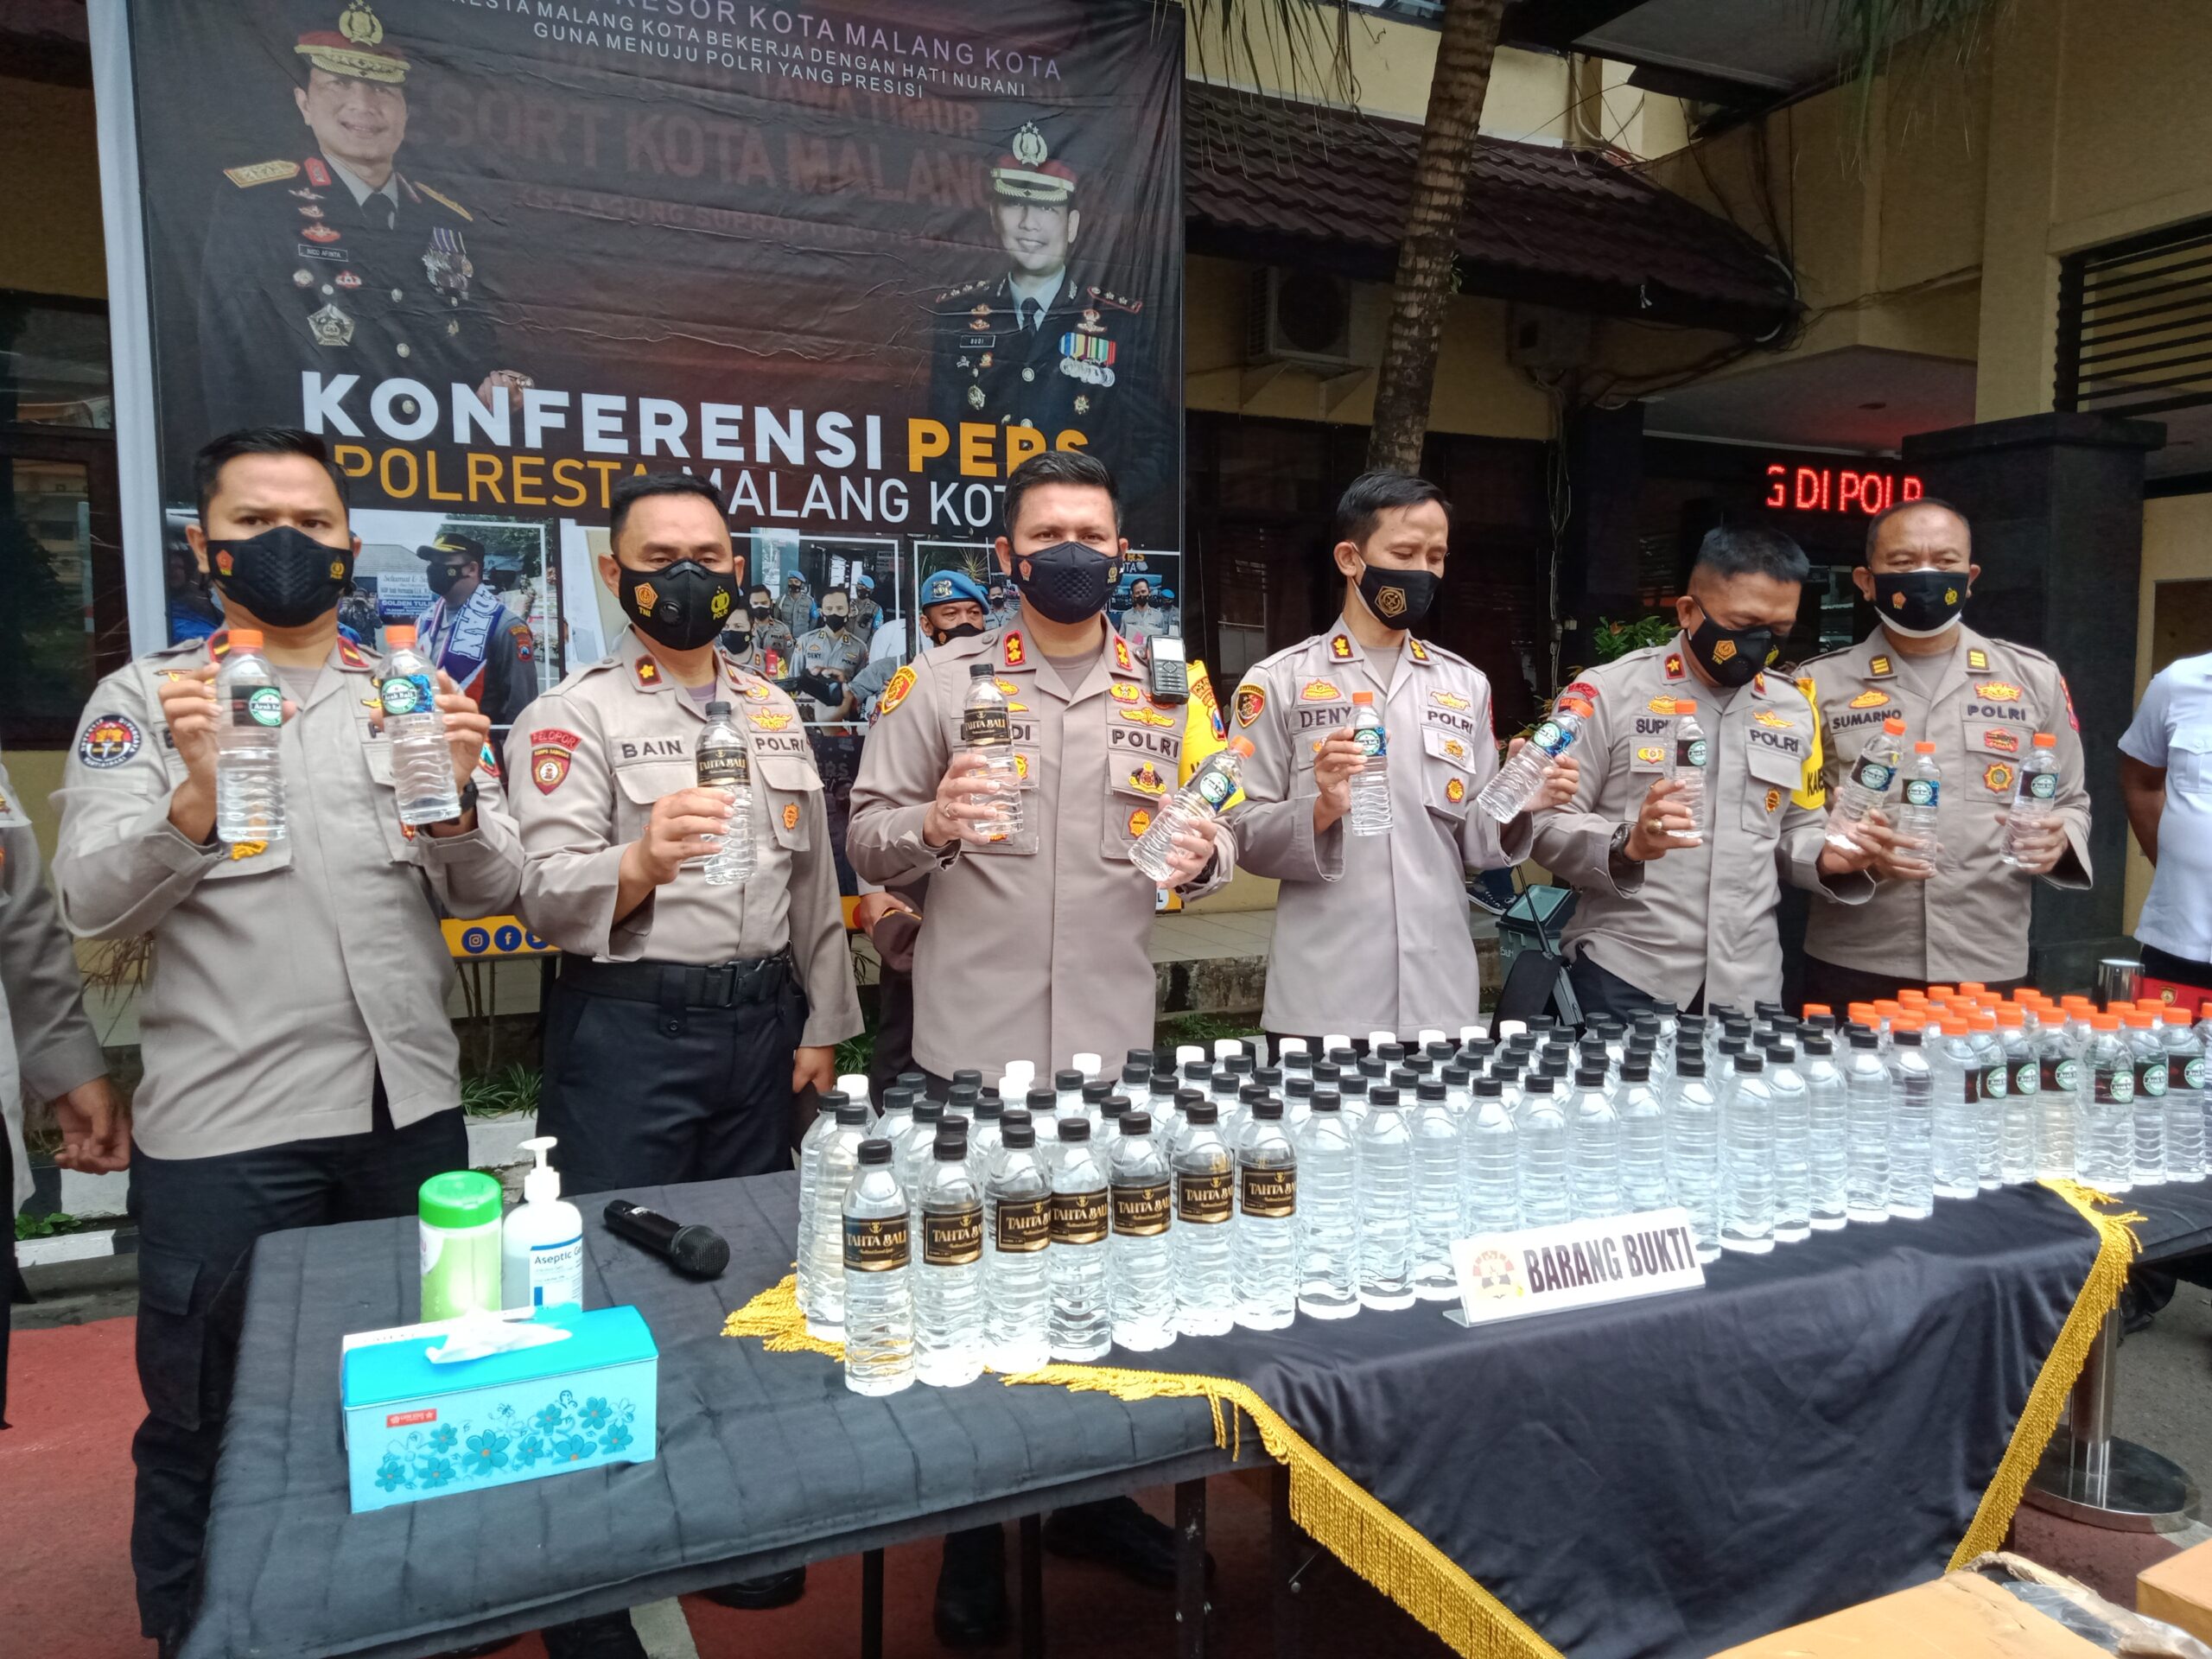 Ribuan Botol Miras Ilegal dari Bali Disita Polresta Malang Kota